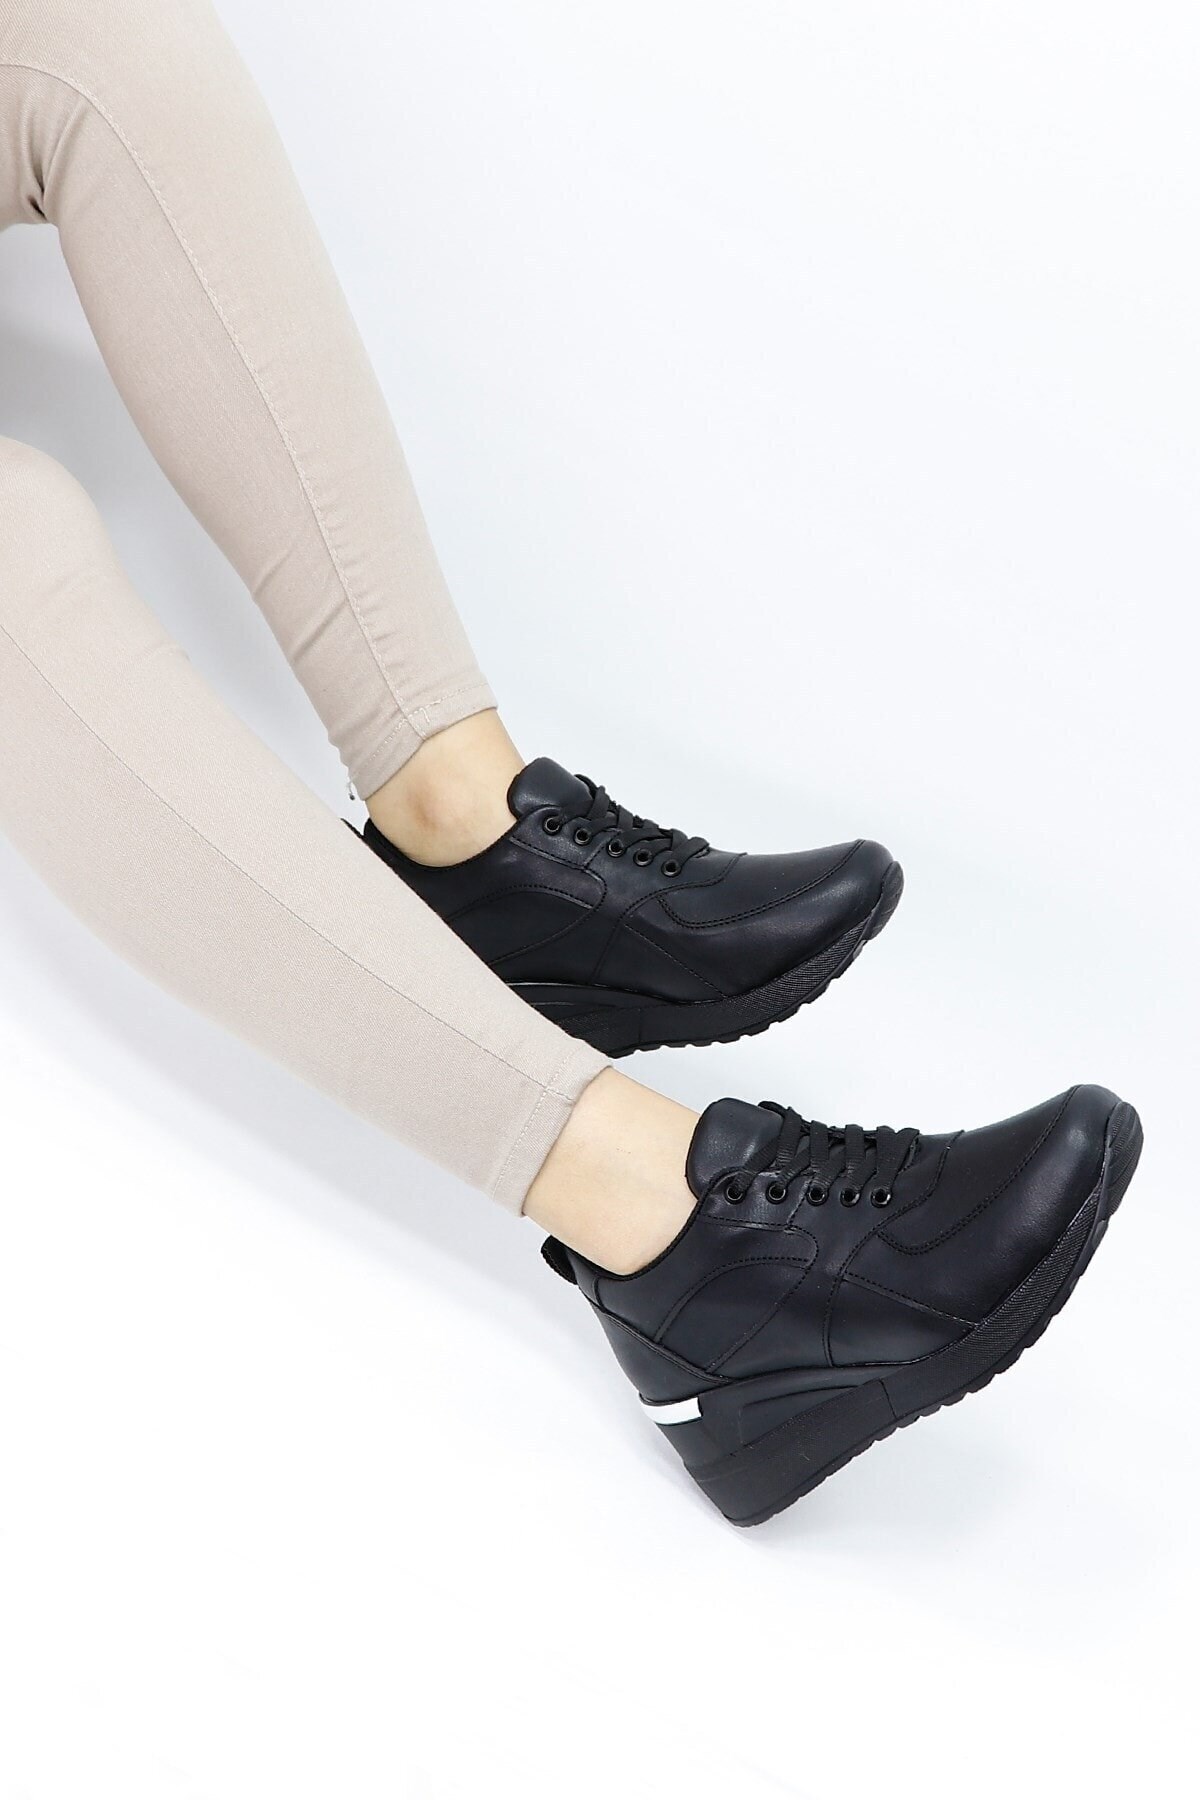 Kadın Siyah Dolgu Topuklu Spor Ayakkabı - Tuğbali